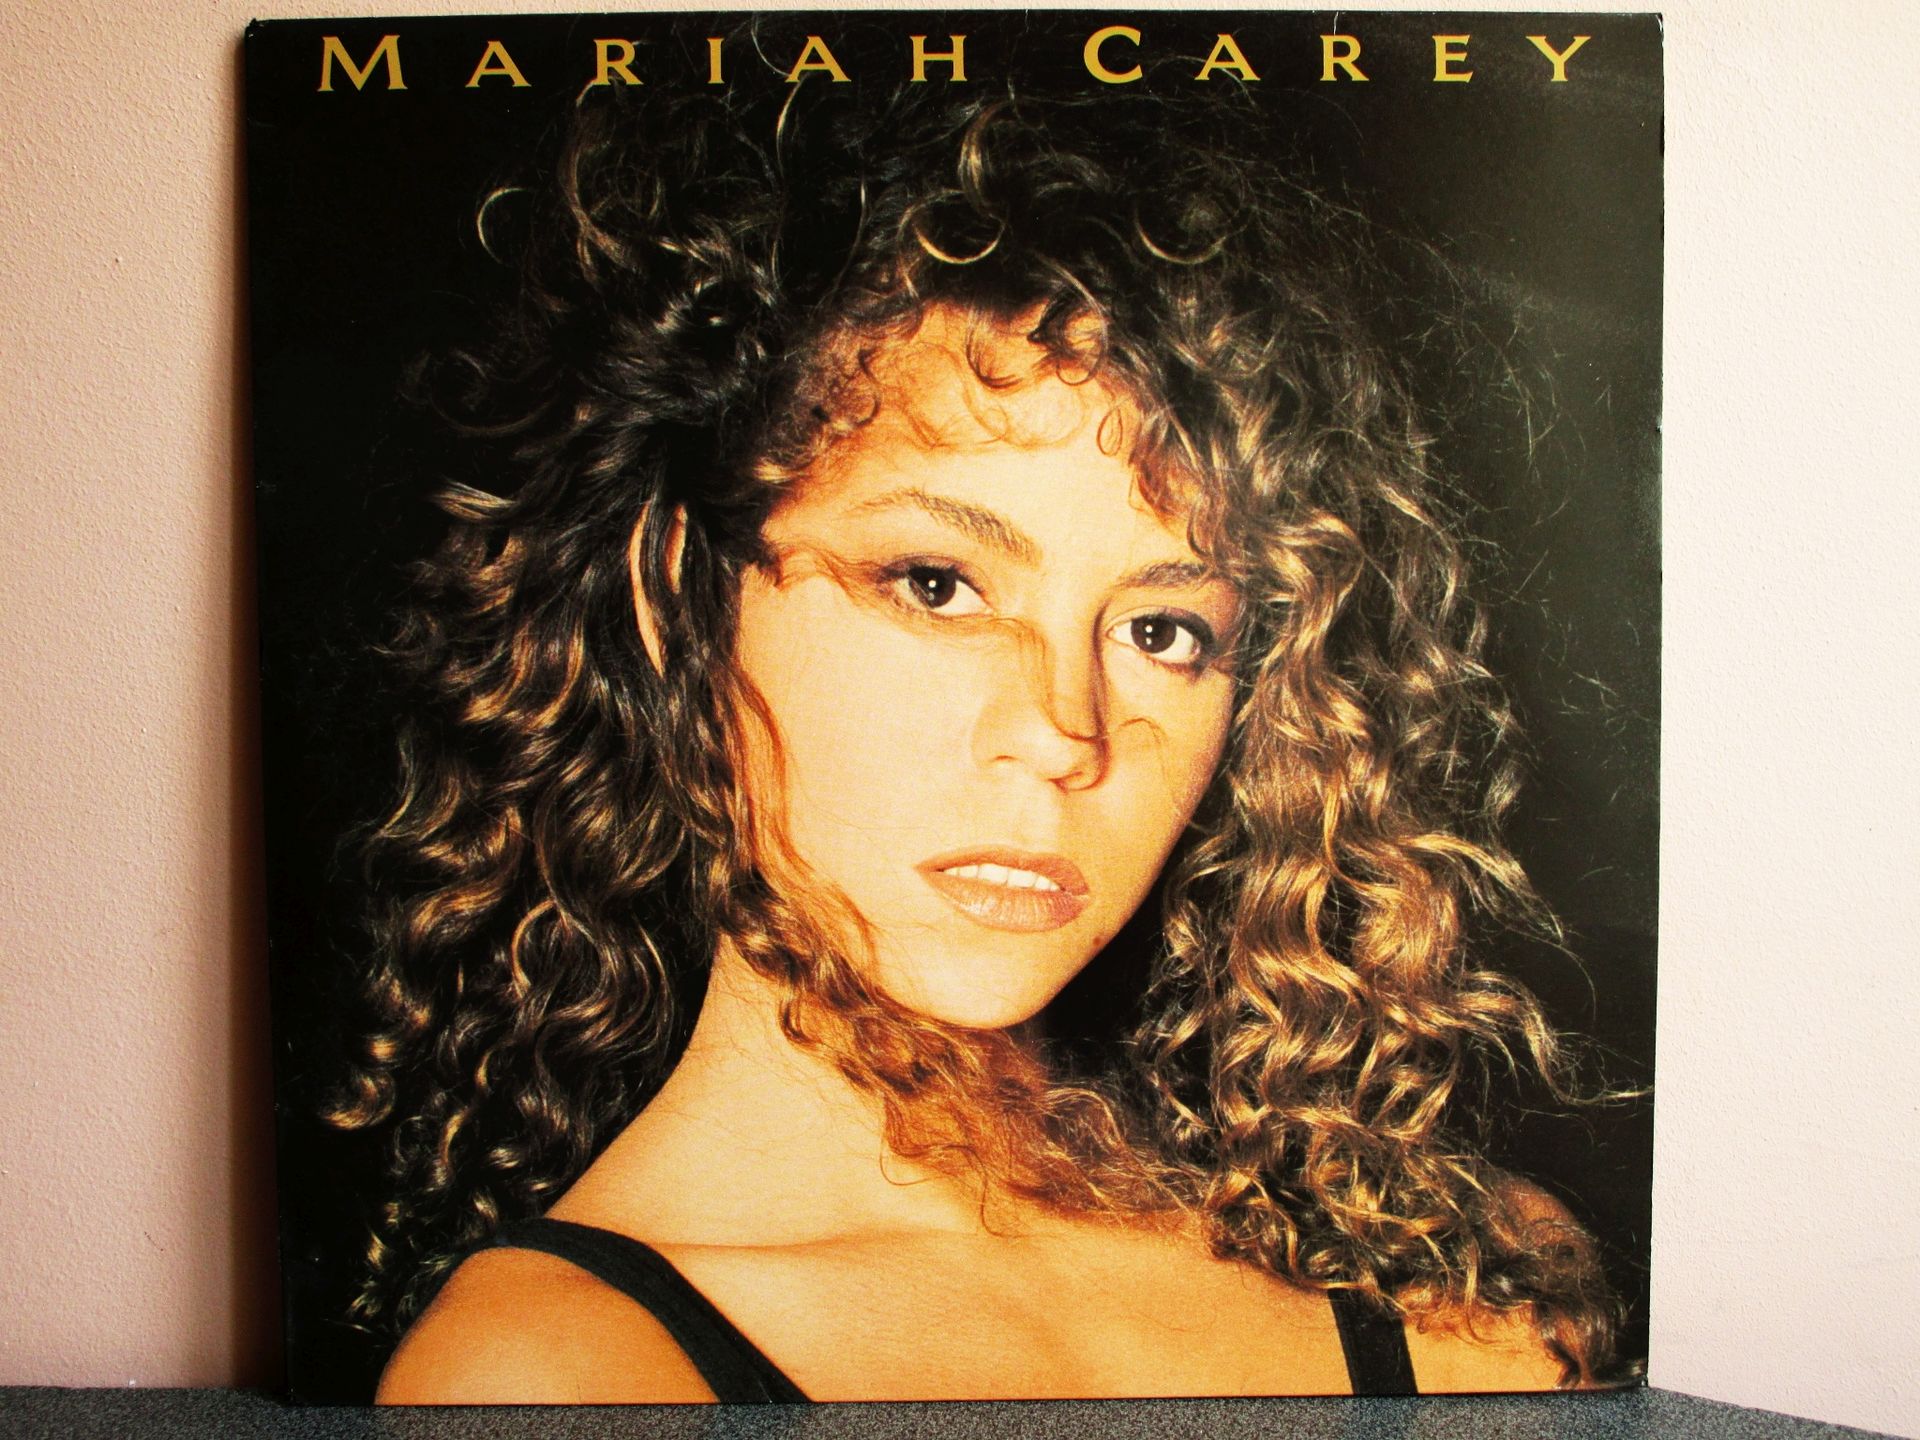 Mariah Carey - Mariah Carey (162159580) - Osta.ee